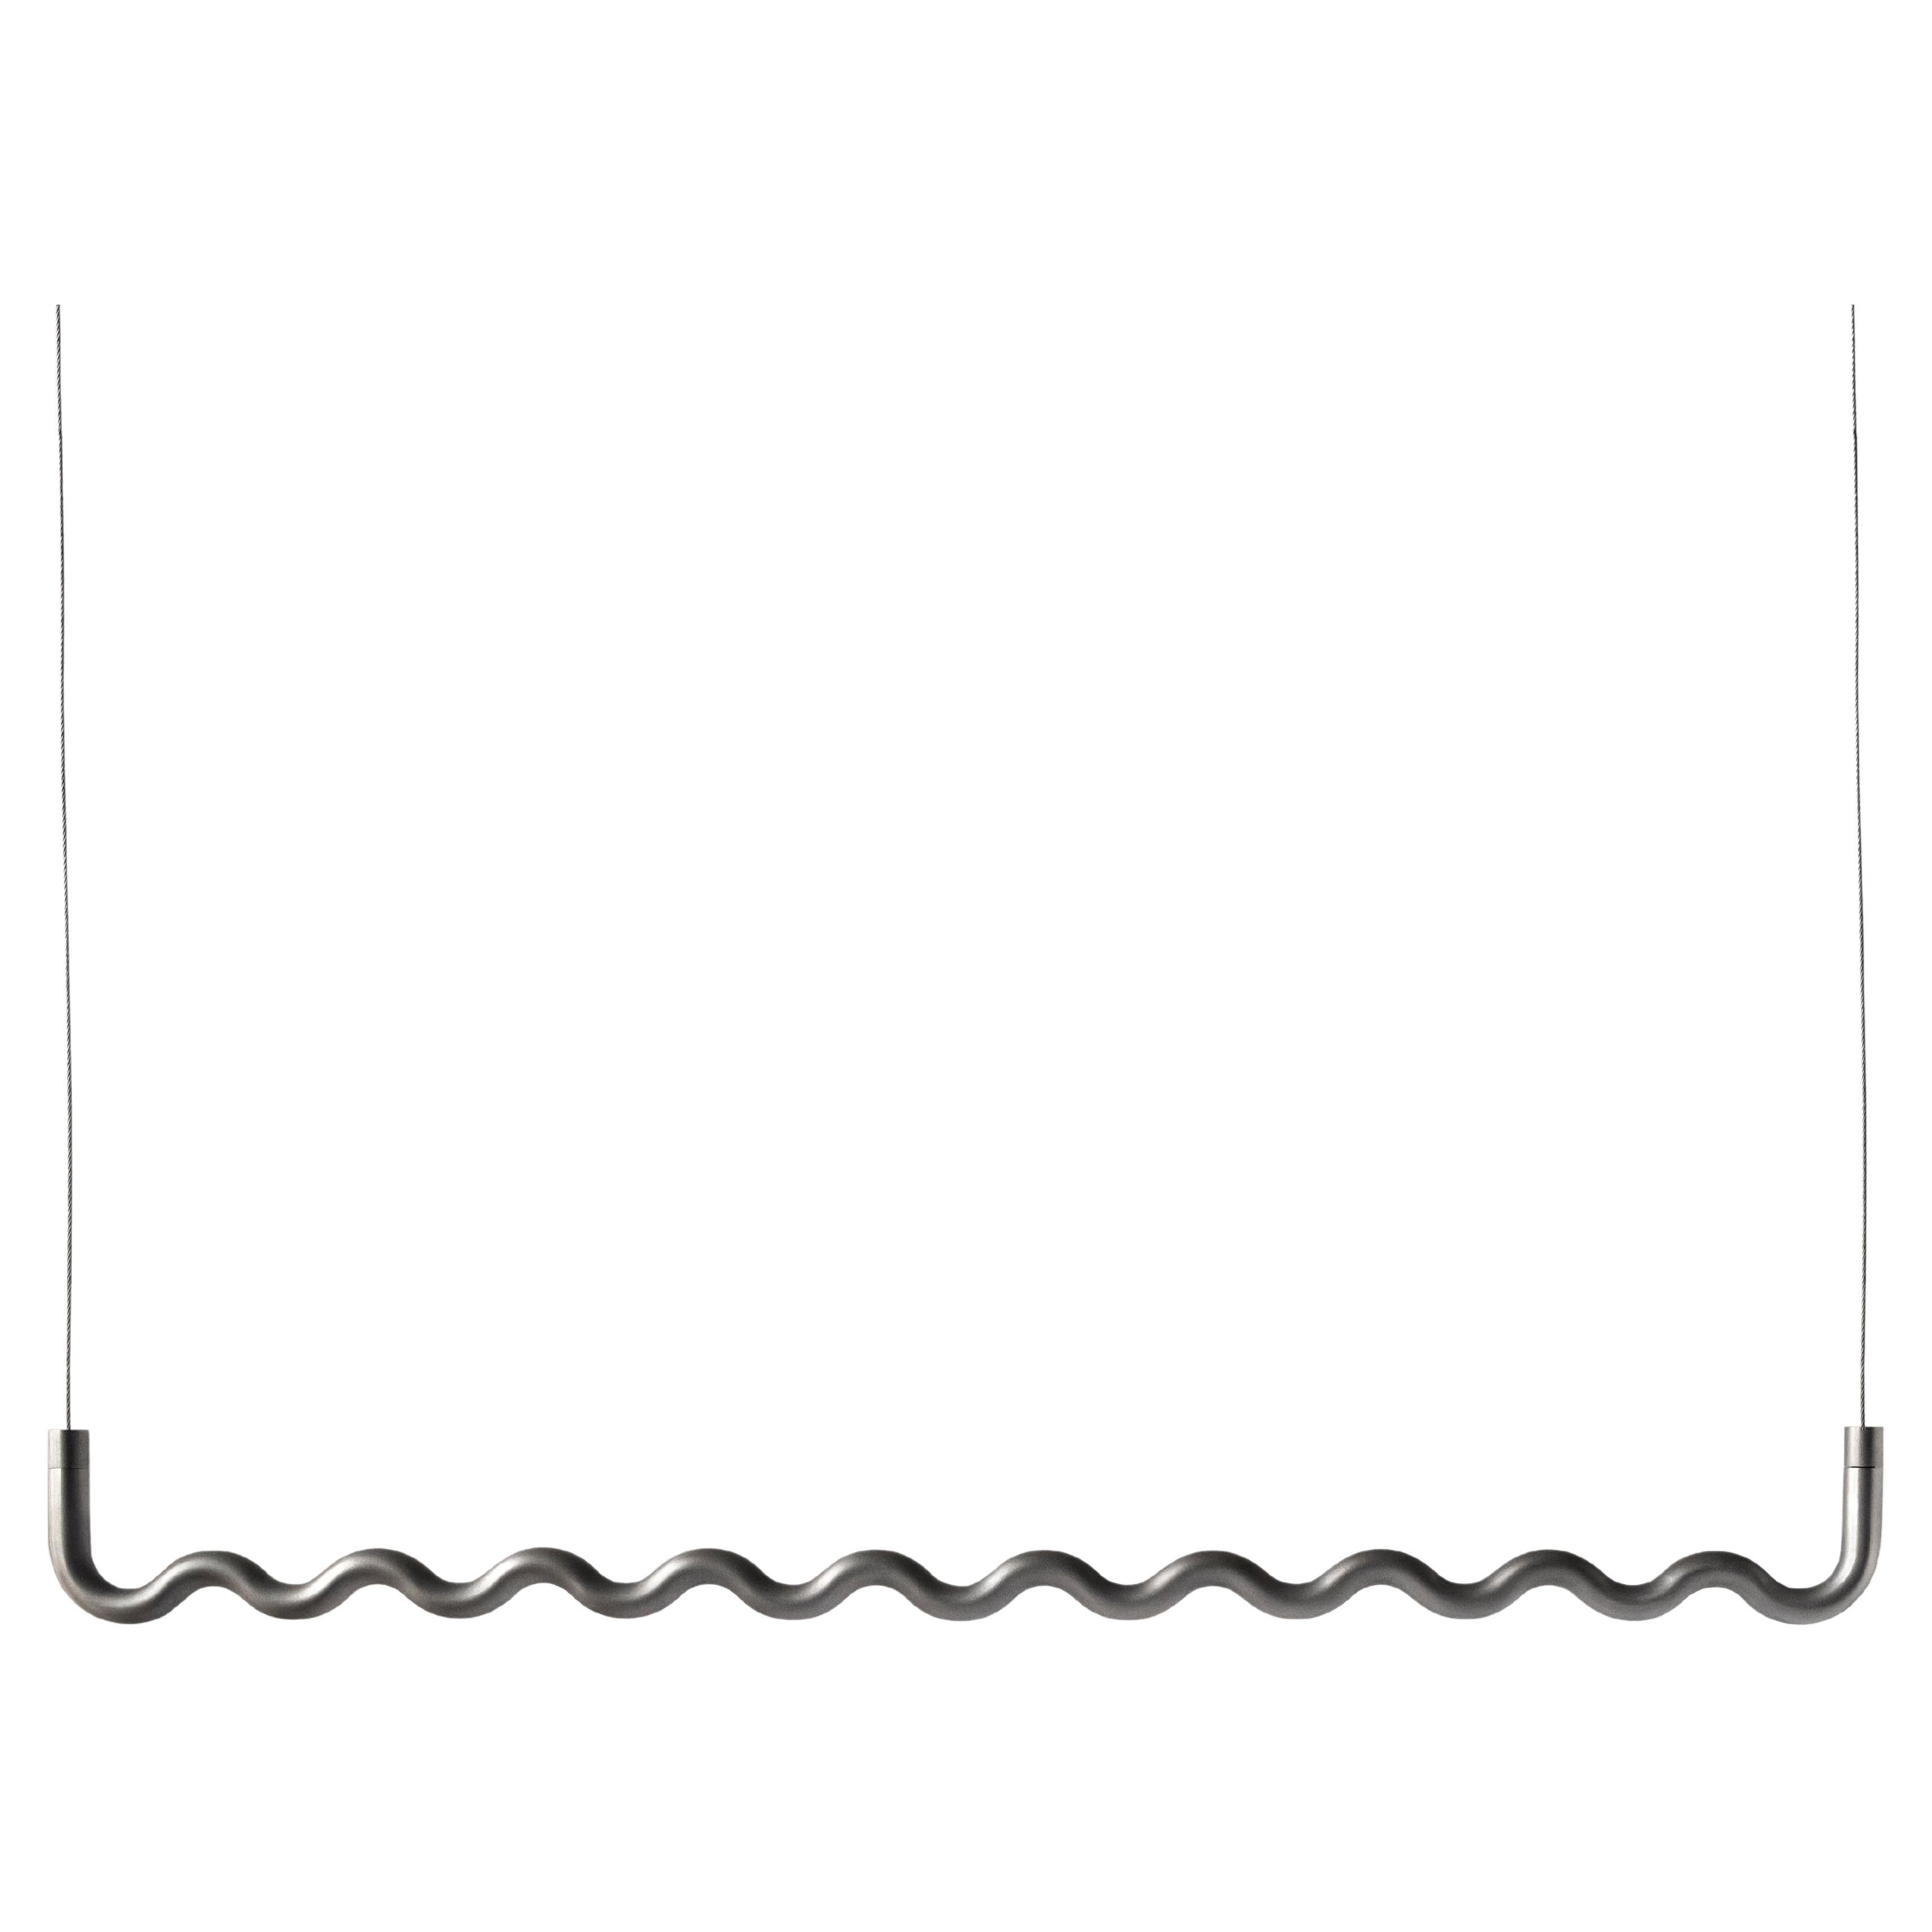 Contemporary Sine Wave Hanging Coat Rack Medium in Raw Aluminum by Erik Olovsson